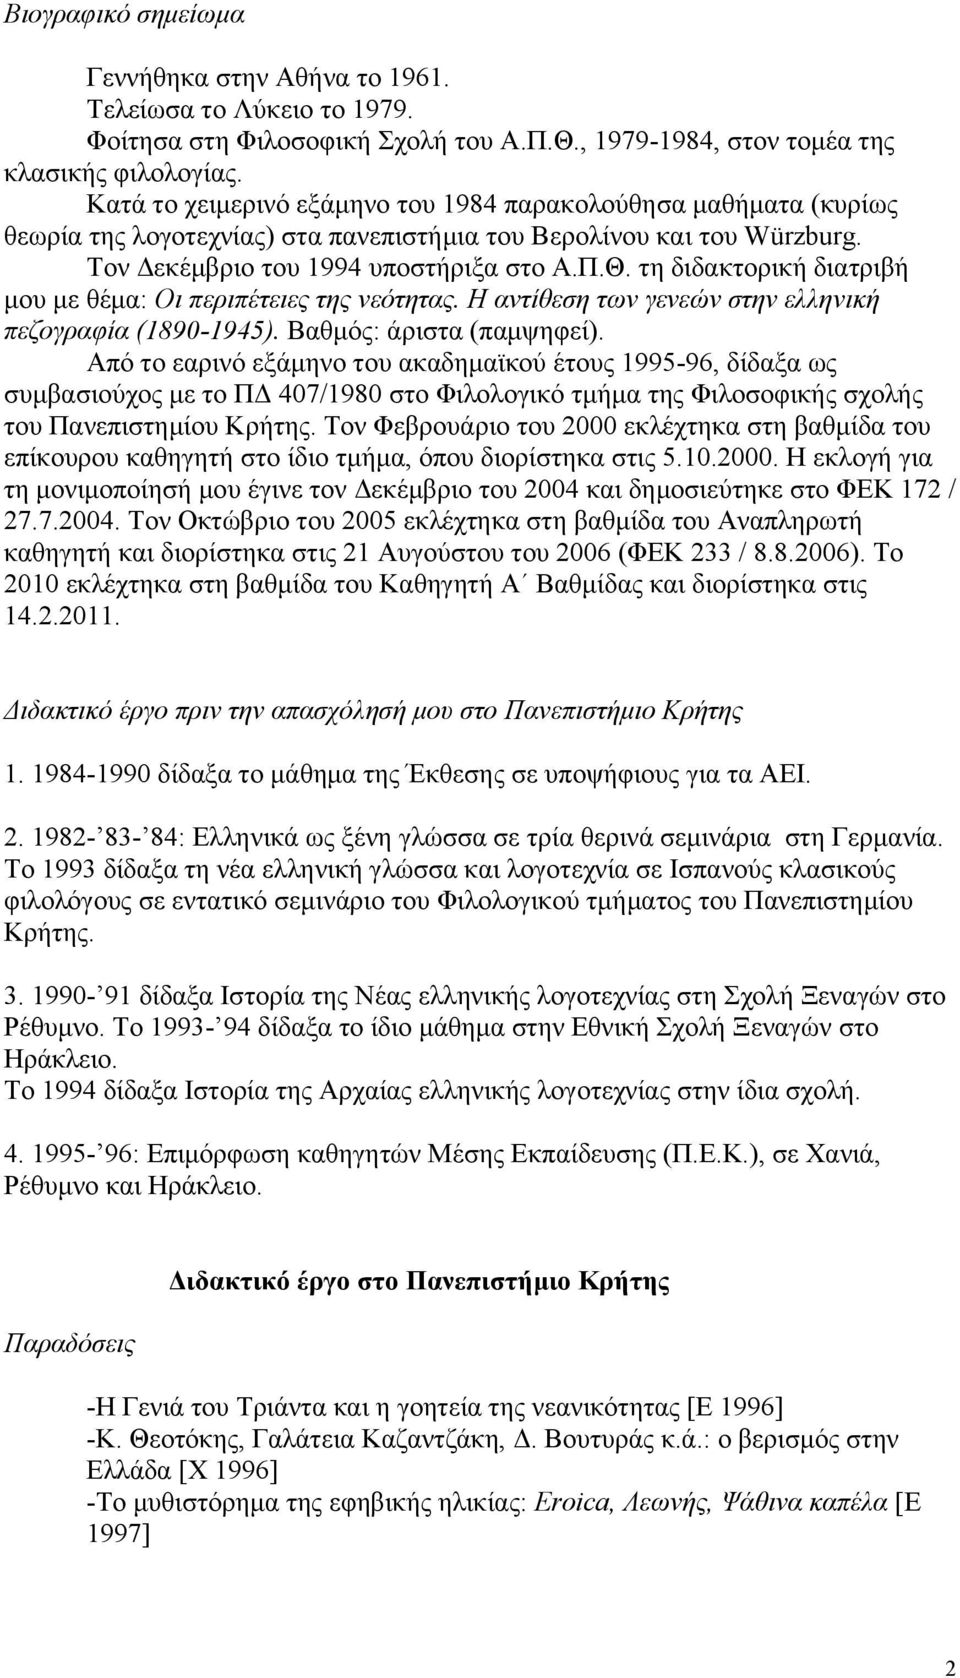 τη διδακτορική διατριβή μου με θέμα: Οι περιπέτειες της νεότητας. Η αντίθεση των γενεών στην ελληνική πεζογραφία (1890-1945). Βαθμός: άριστα (παμψηφεί).